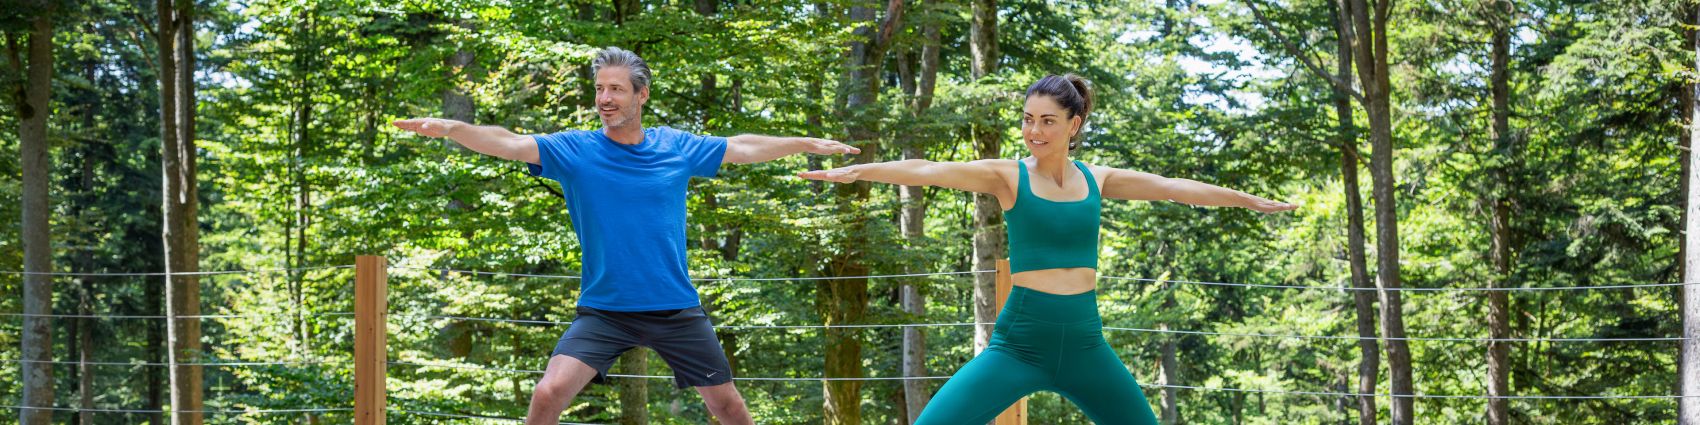 Yoga im WaldSpa des Wellness und Naturresort Reischlhof